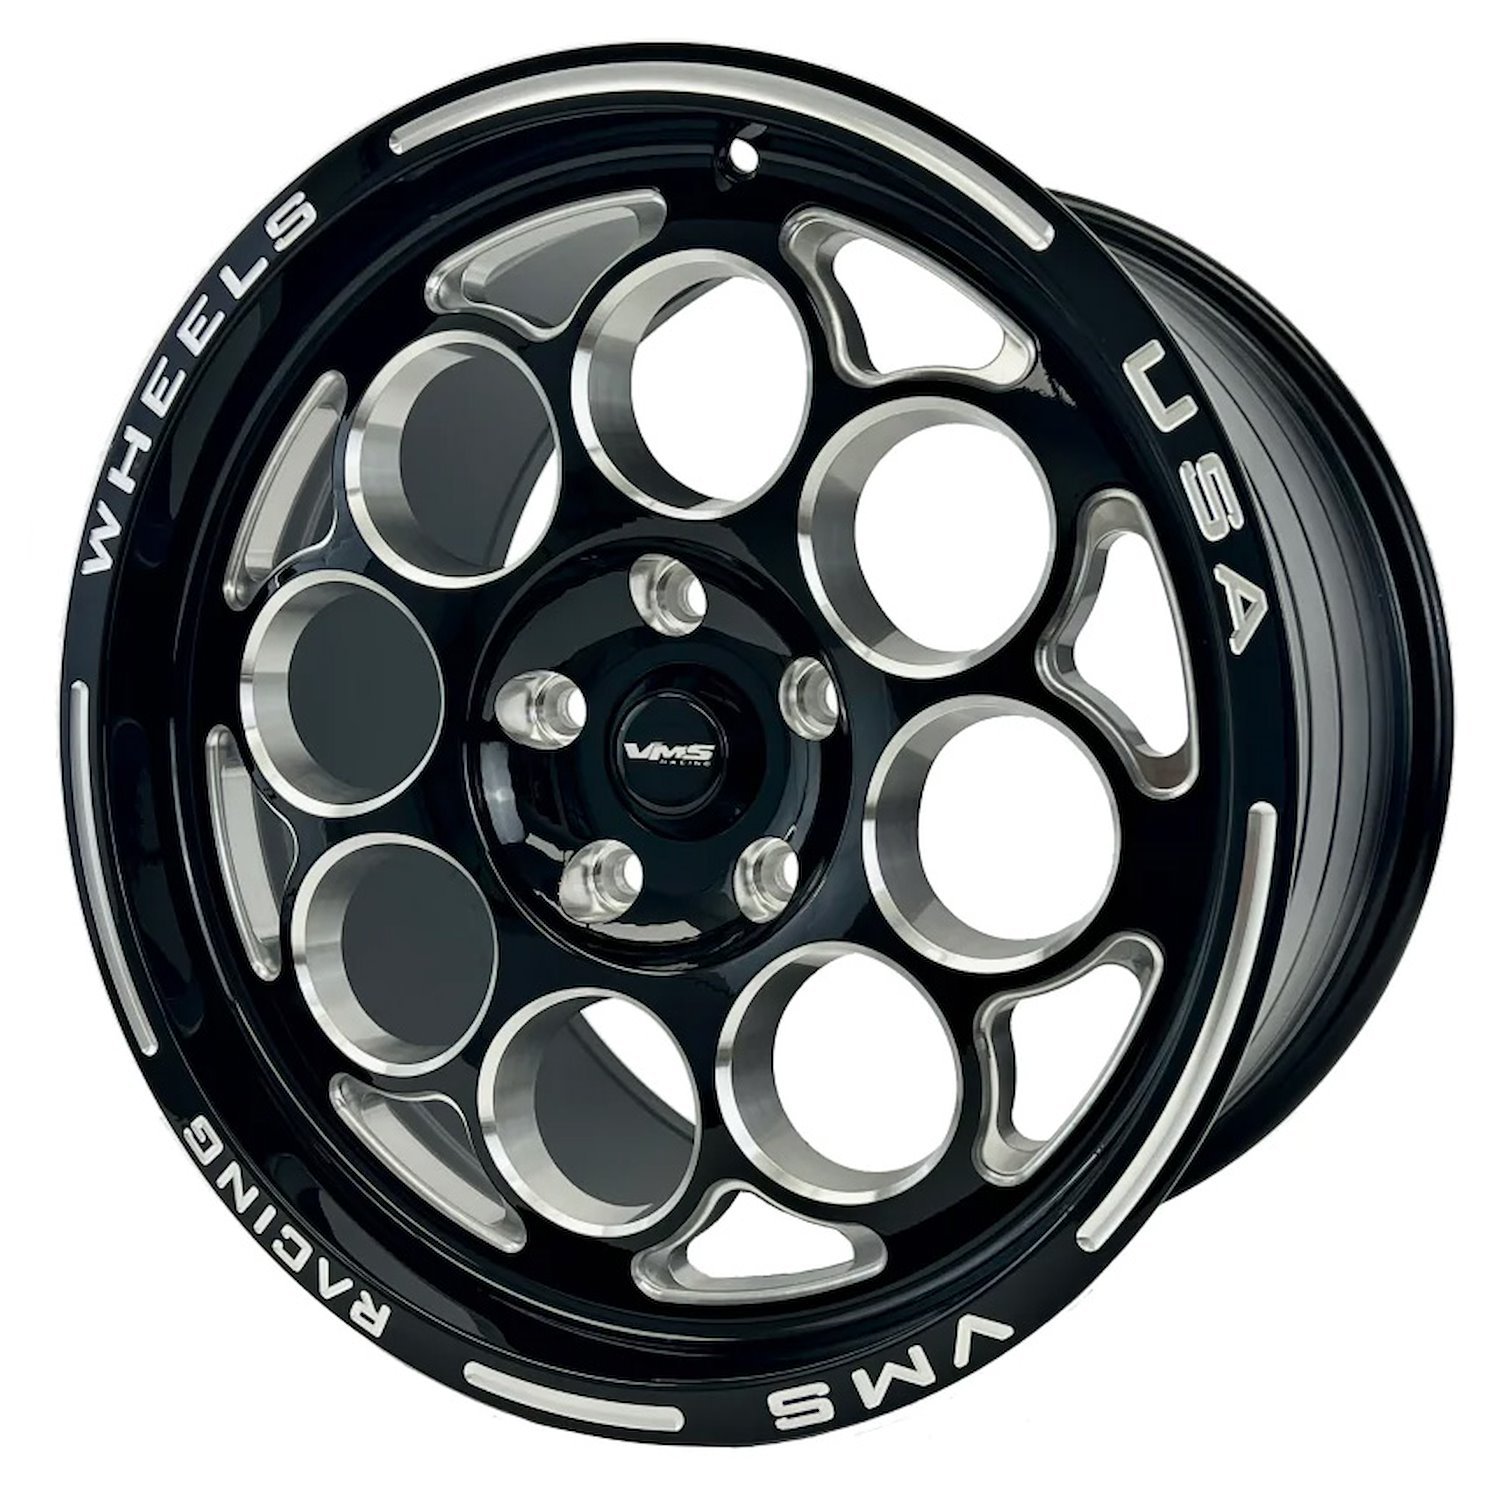 VWMO030 Modulo Wheel, Size: 17" x 10", Bolt Pattern: 5 x 4 1/2" (114.3 mm) [Finish: Gloss Black Milled]